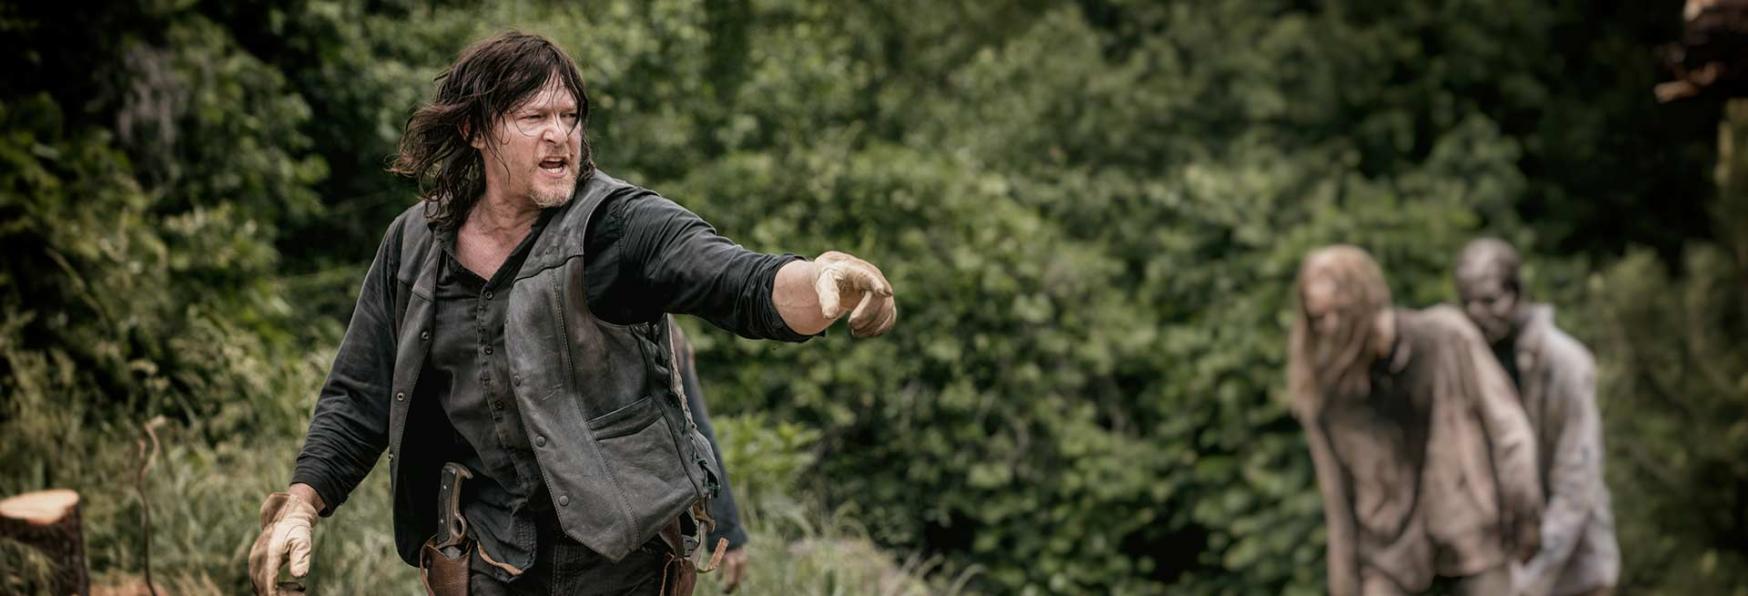 The Walking Dead 11: il Teaser Trailer svela la Data di Uscita della Stagione Conclusiva